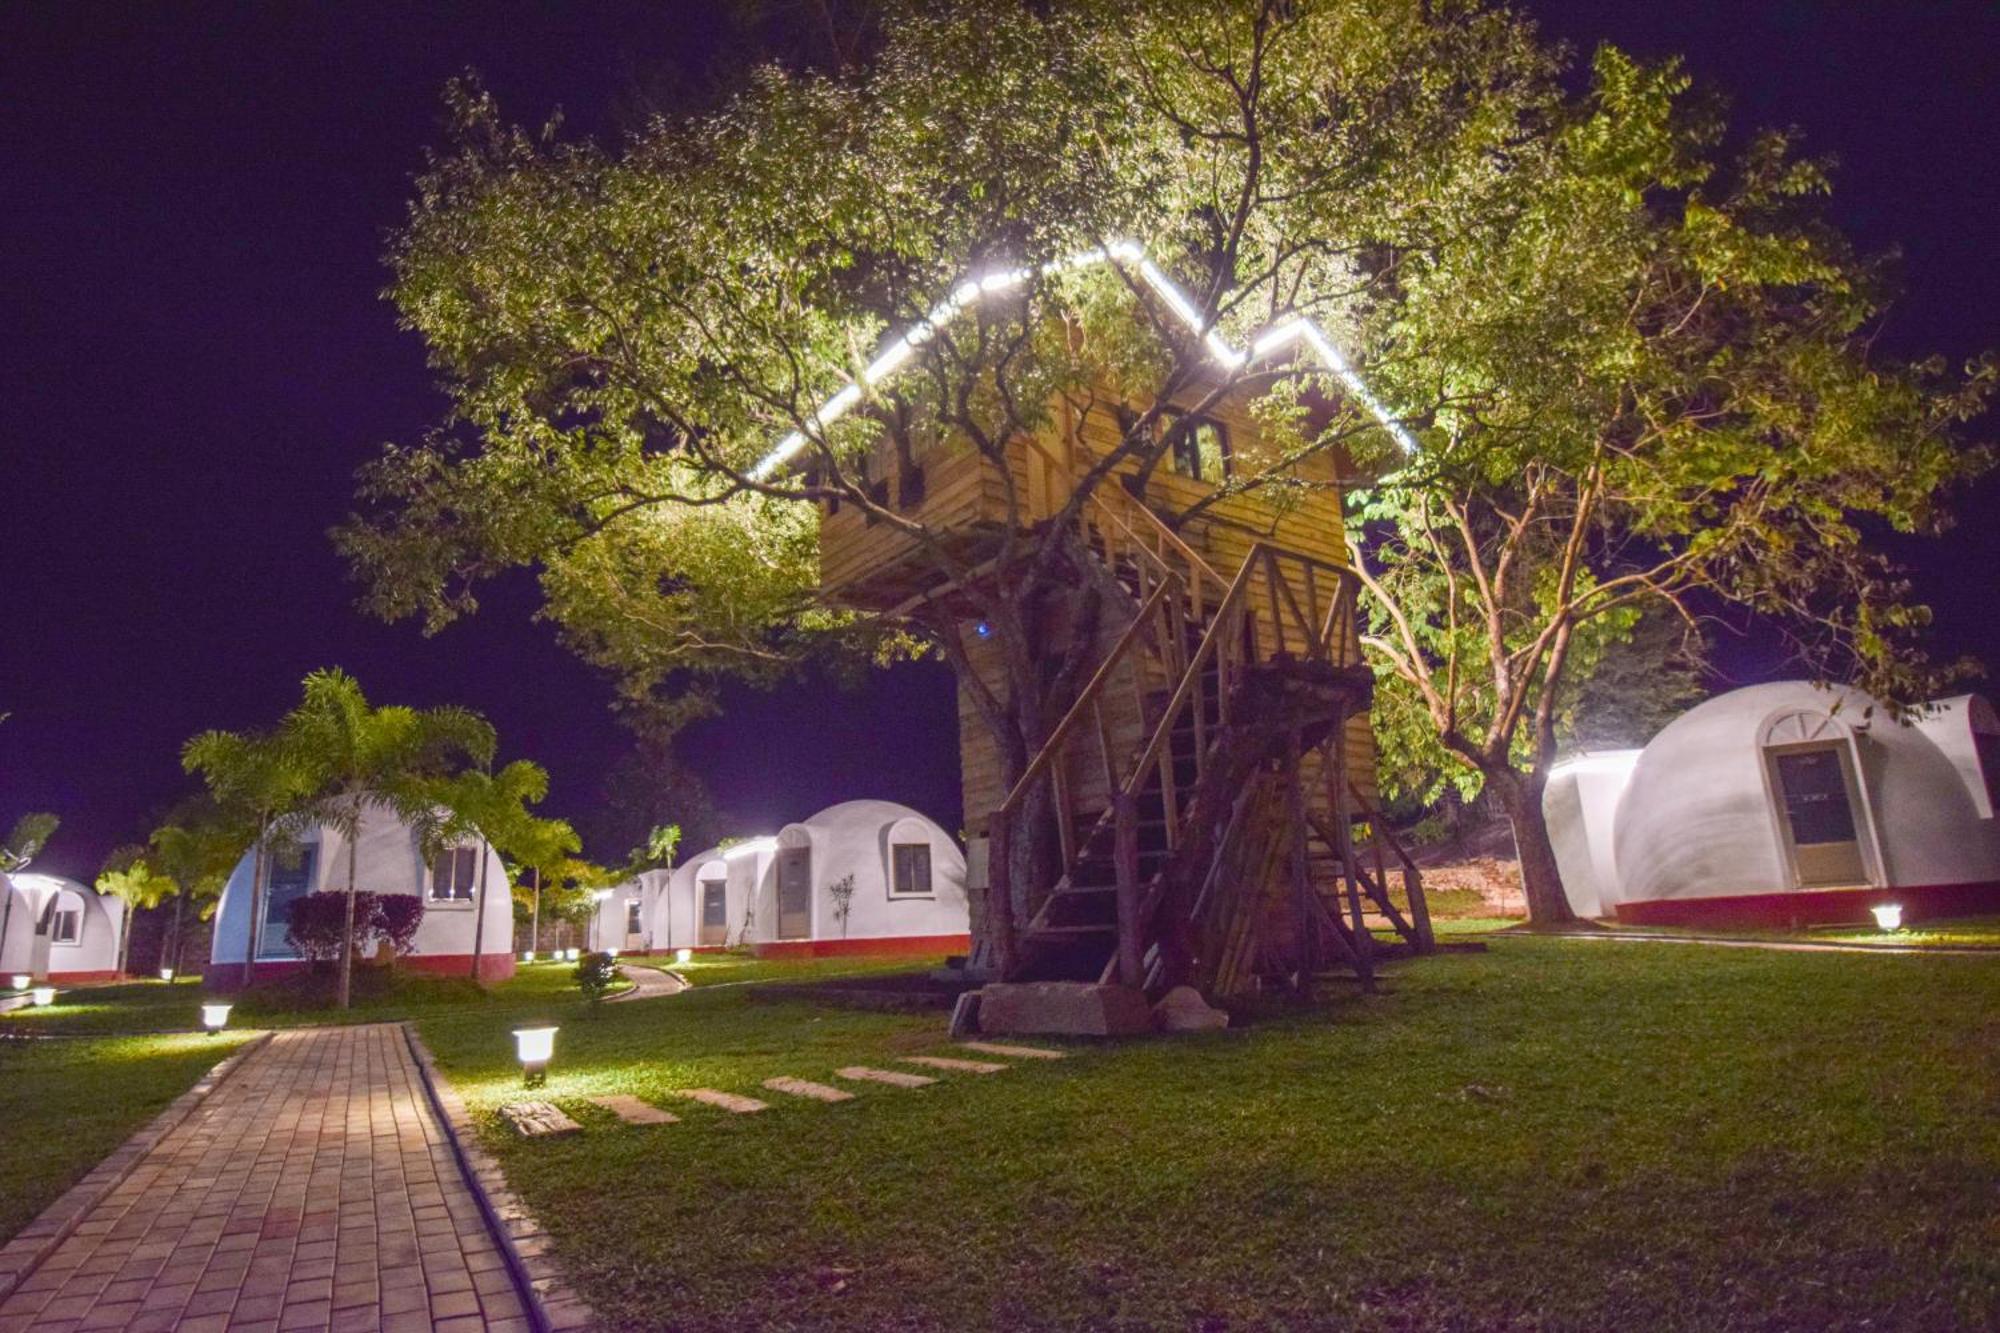 The Lion Kingdom Sigiriya Hotel Kültér fotó